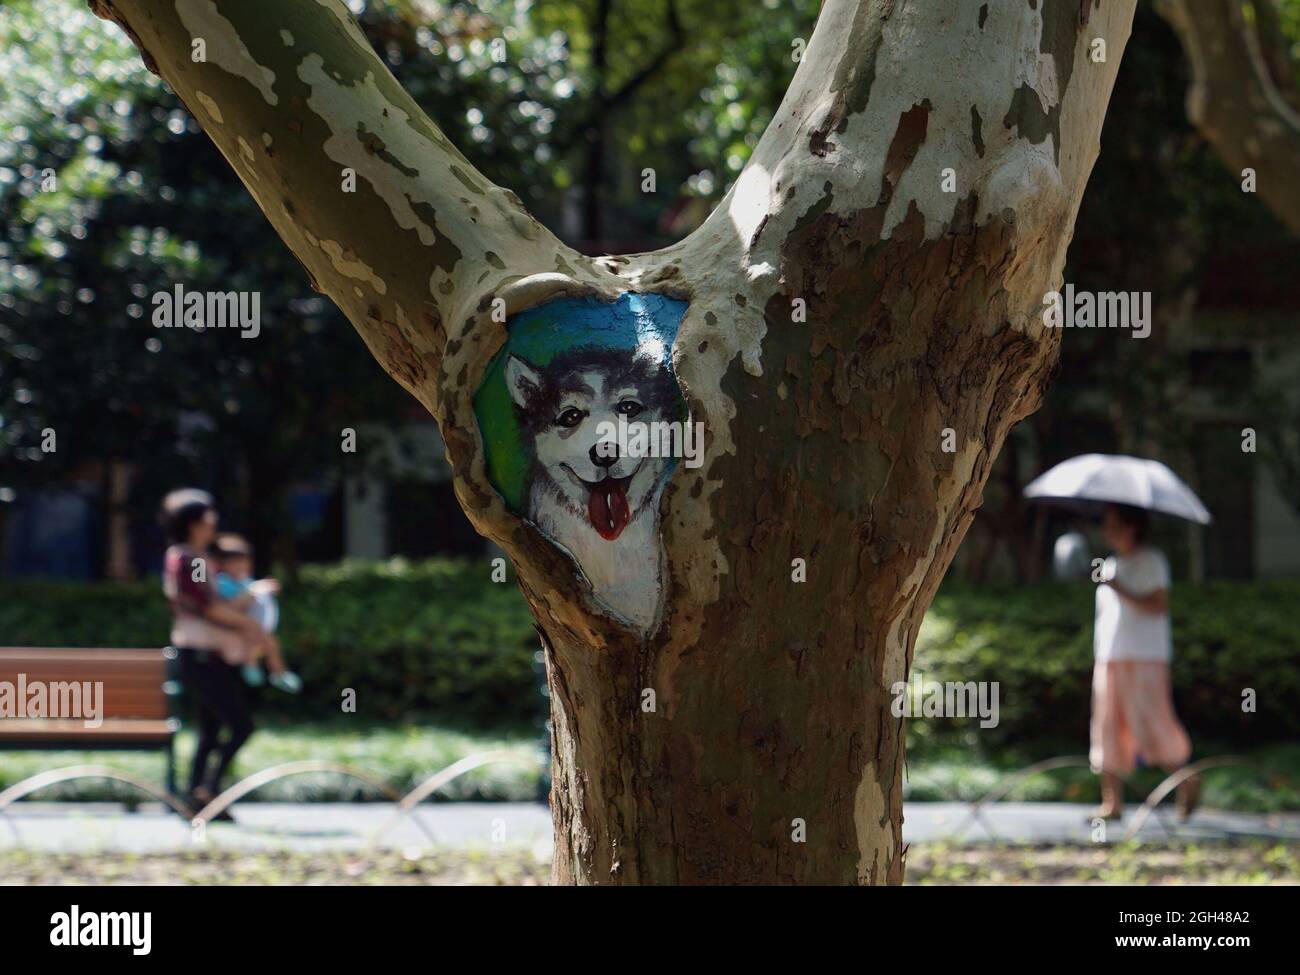 Shanghai, Cina. 31 ago 2021. Un buco dipinto è visto al parco di Zhabei a Shanghai, Cina orientale, 31 agosto 2021. Il Parco Zhabei ha recentemente fatto uno sforzo per migliorarne l'aspetto pulendo e abbellendo i fori degli alberi nel parco con motivi creativi. Credit: Wang Xiang/Xinhua/Alamy Live News Foto Stock